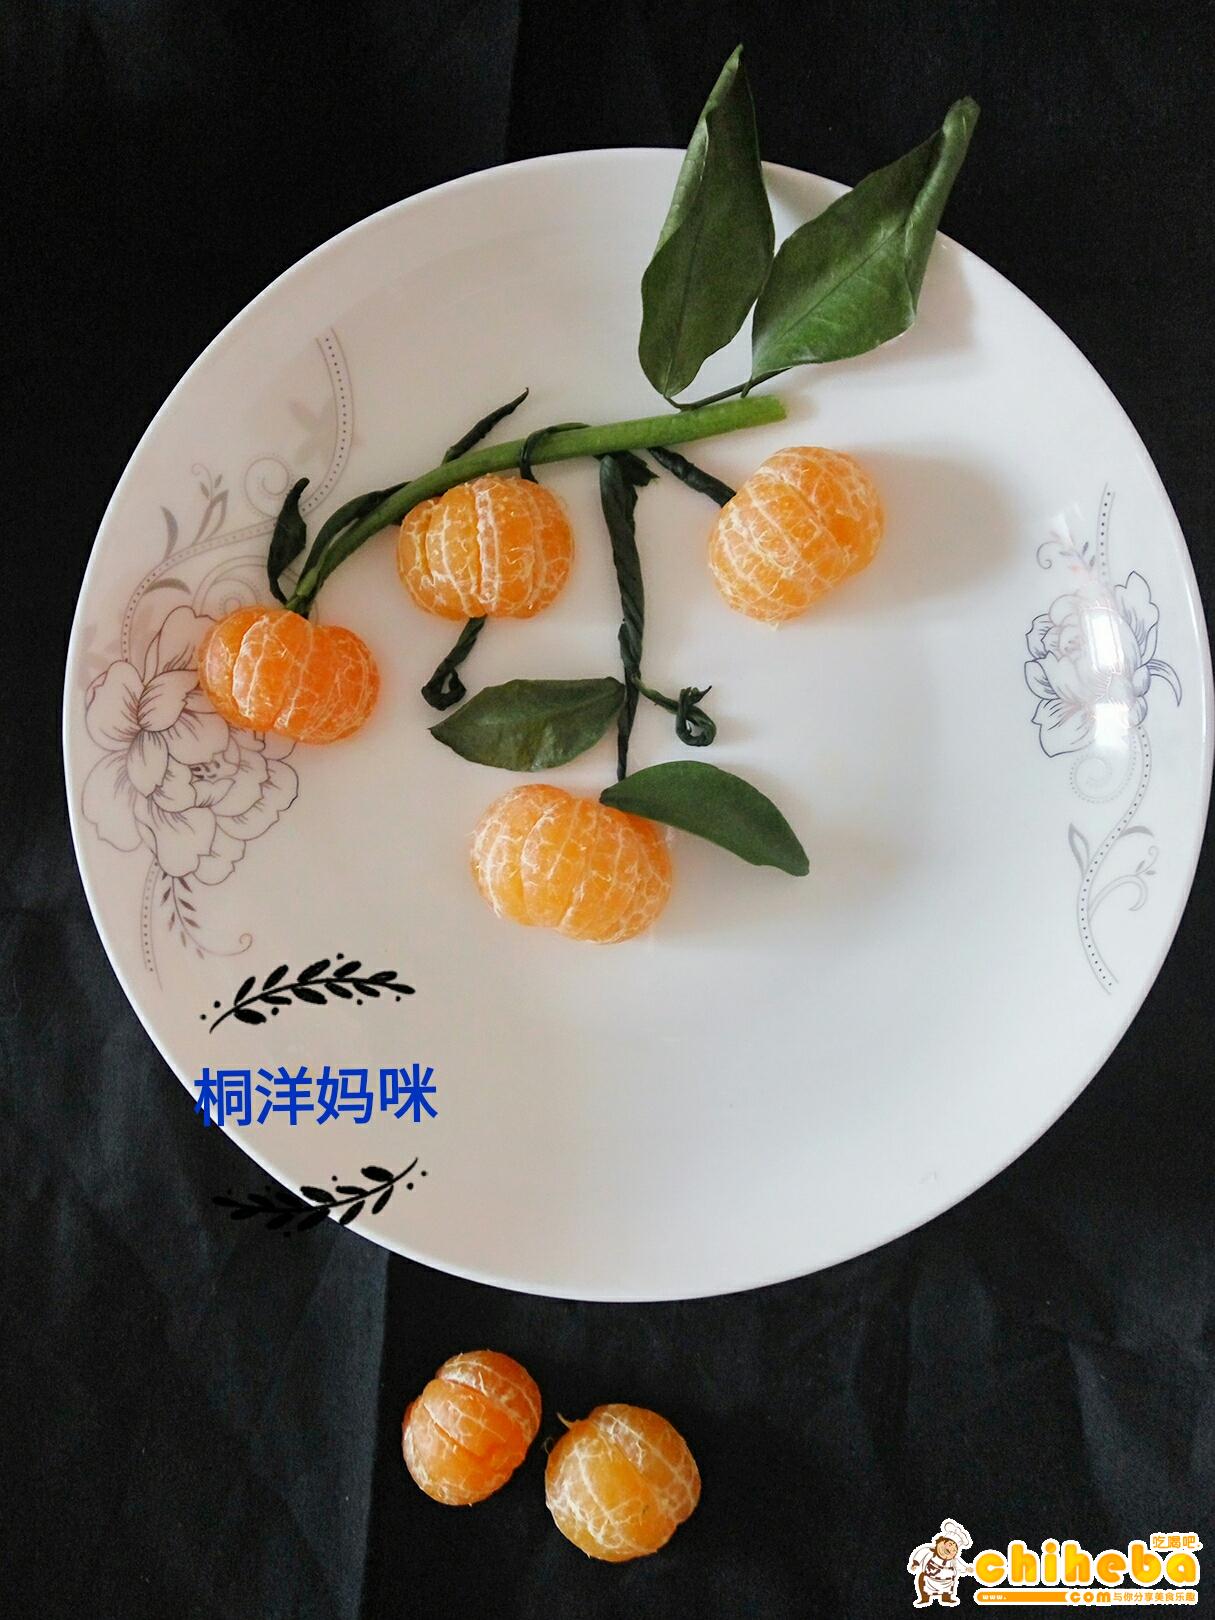 最简单漂亮的水果拼盘_最简单漂亮的水果拼盘图片大全(3)_中国排行网